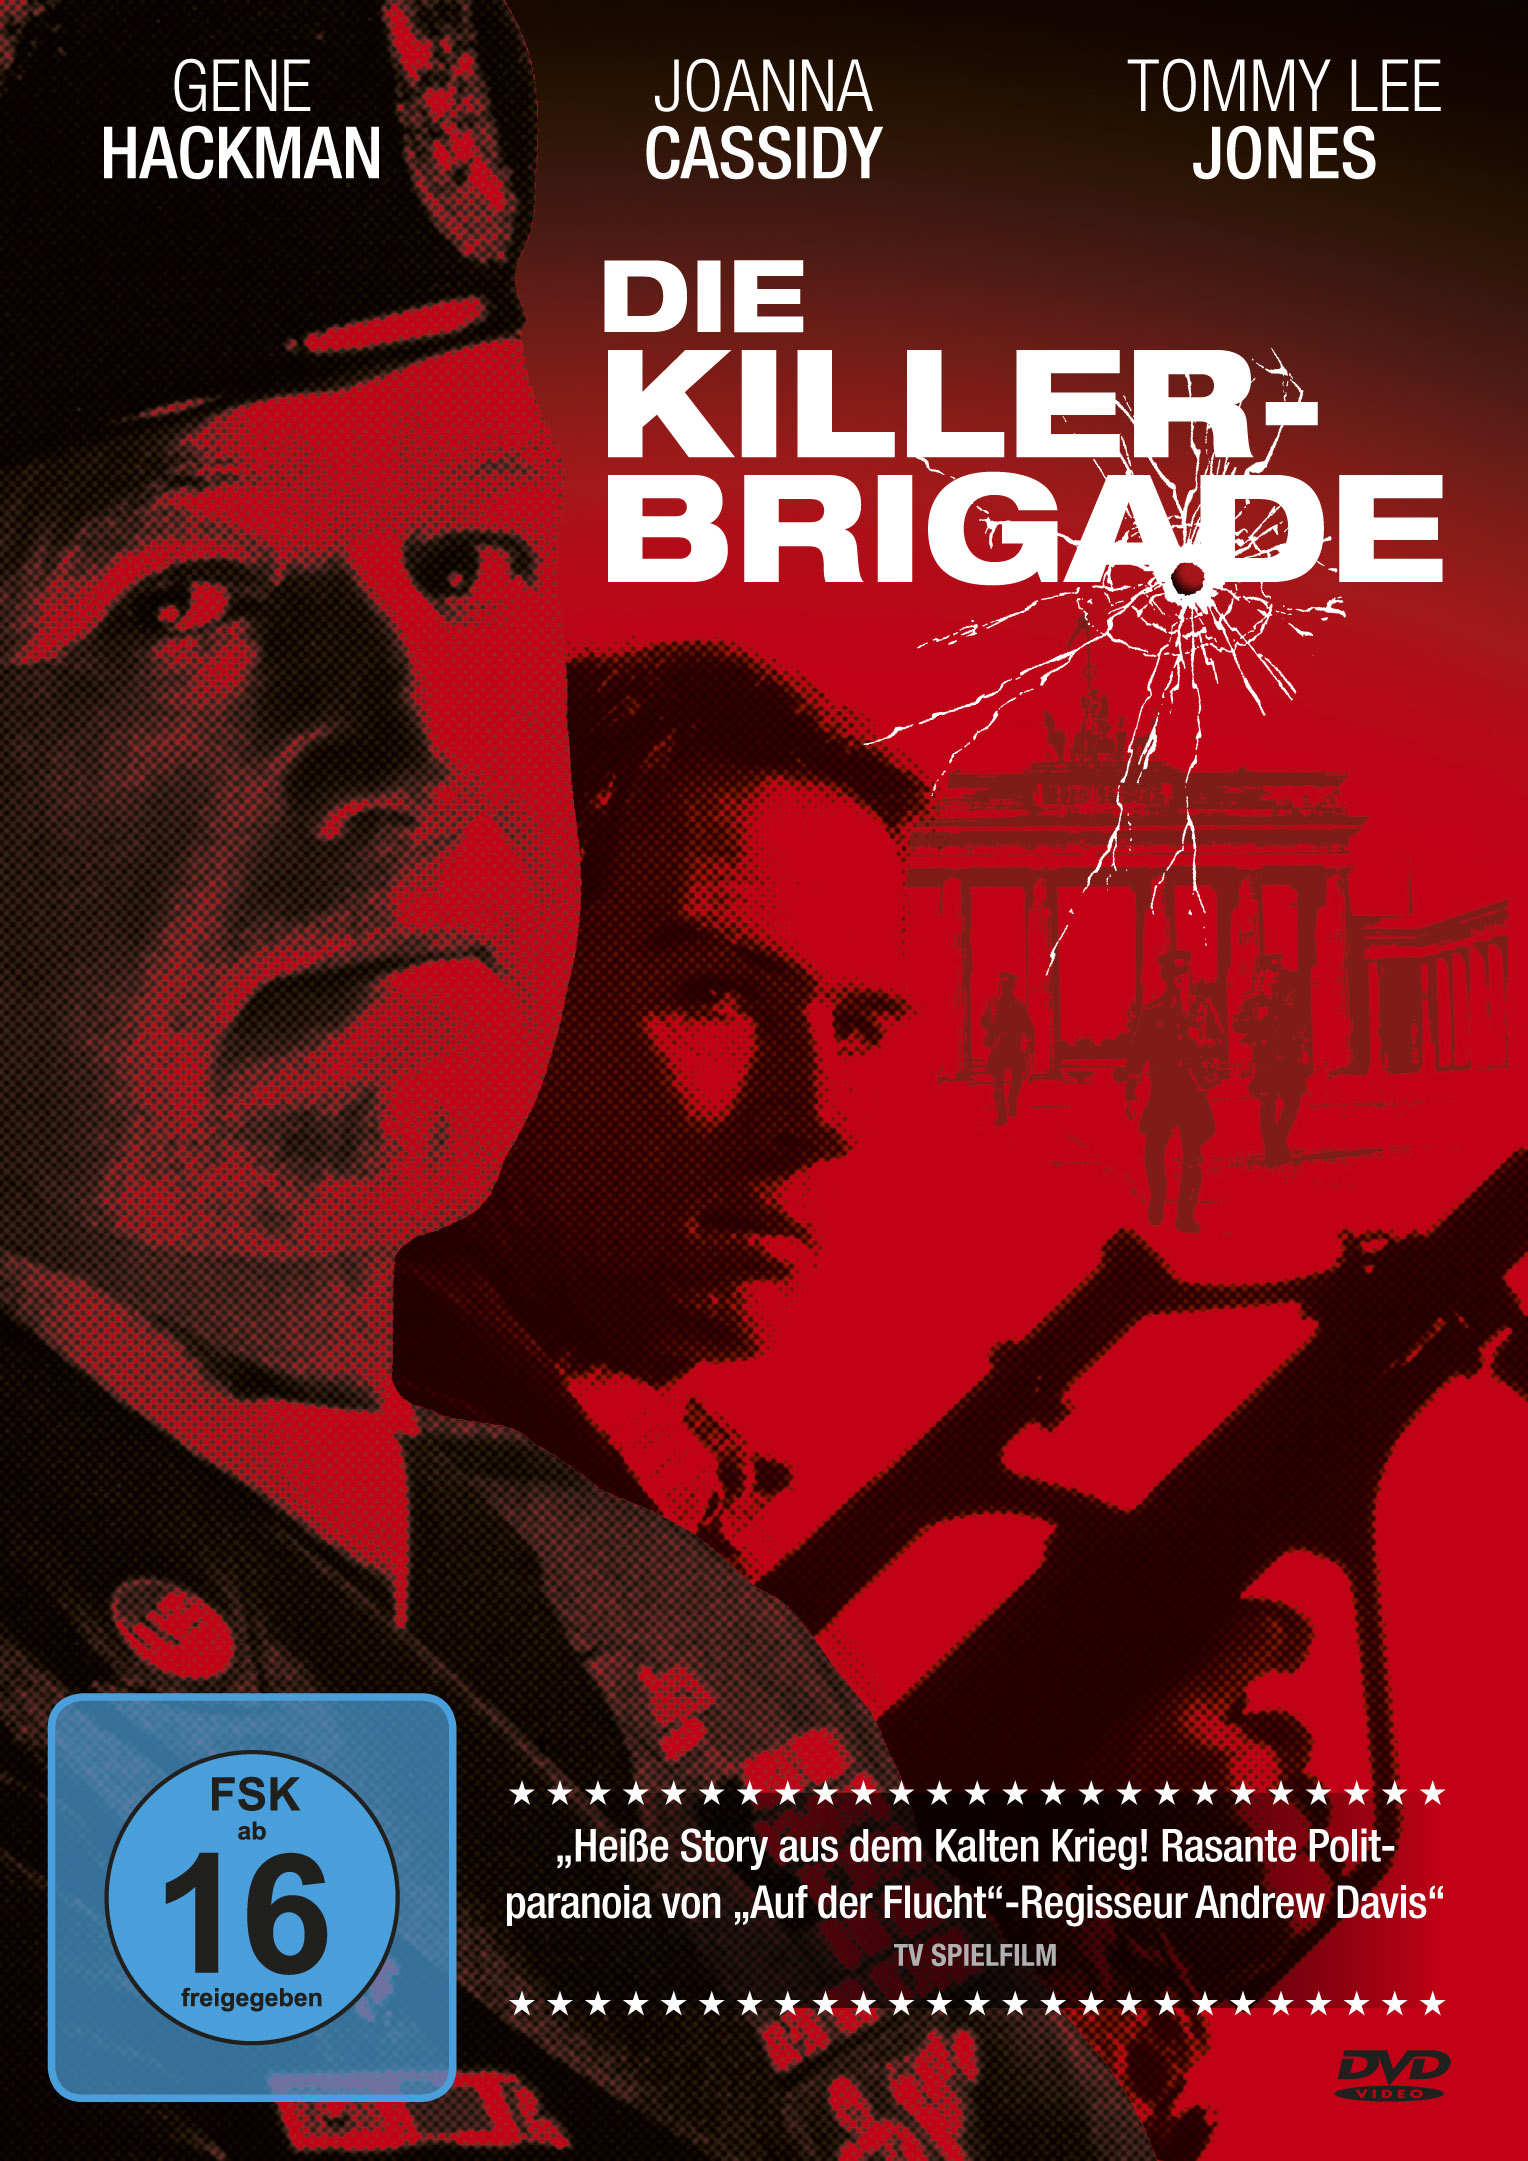 Die Killer-Brigade (DVD) Cover